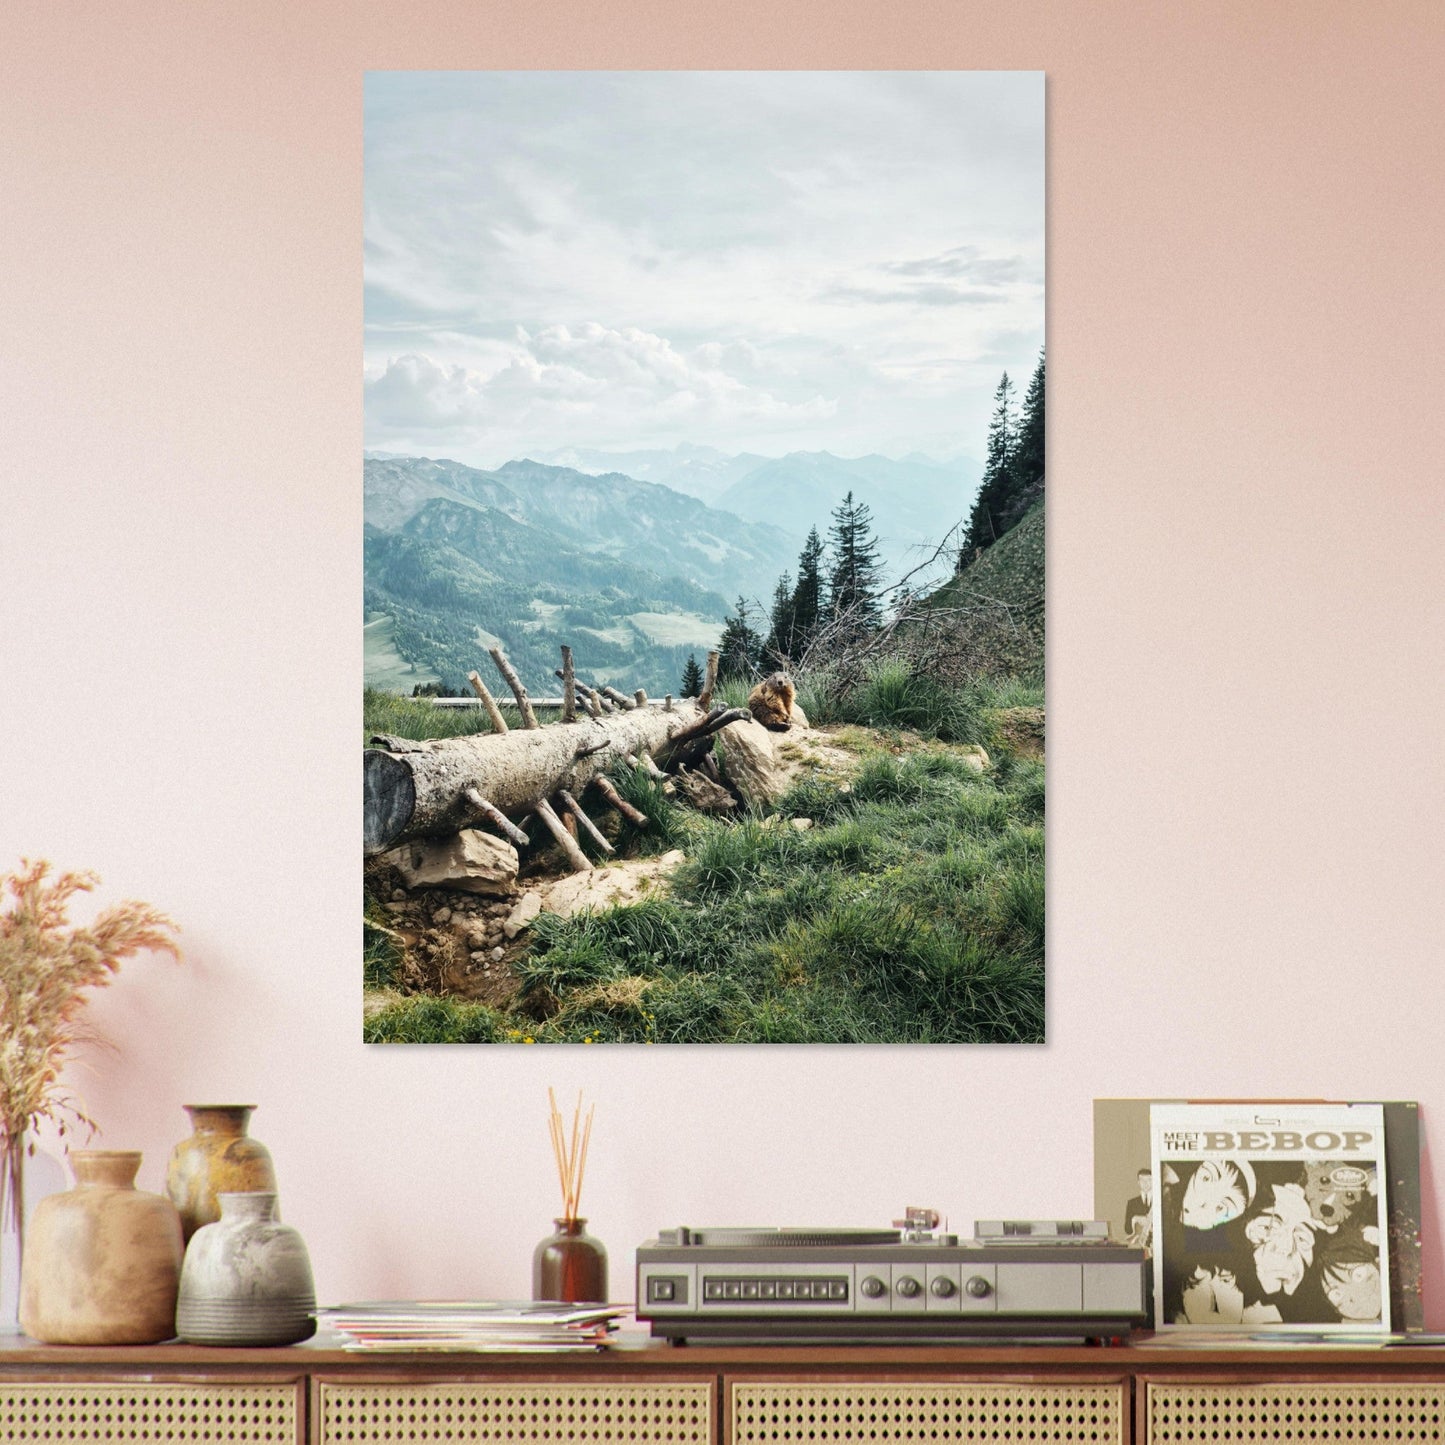 Vente Photo d'une marmotte dans les Alpes #1 - Tableau photo paysage